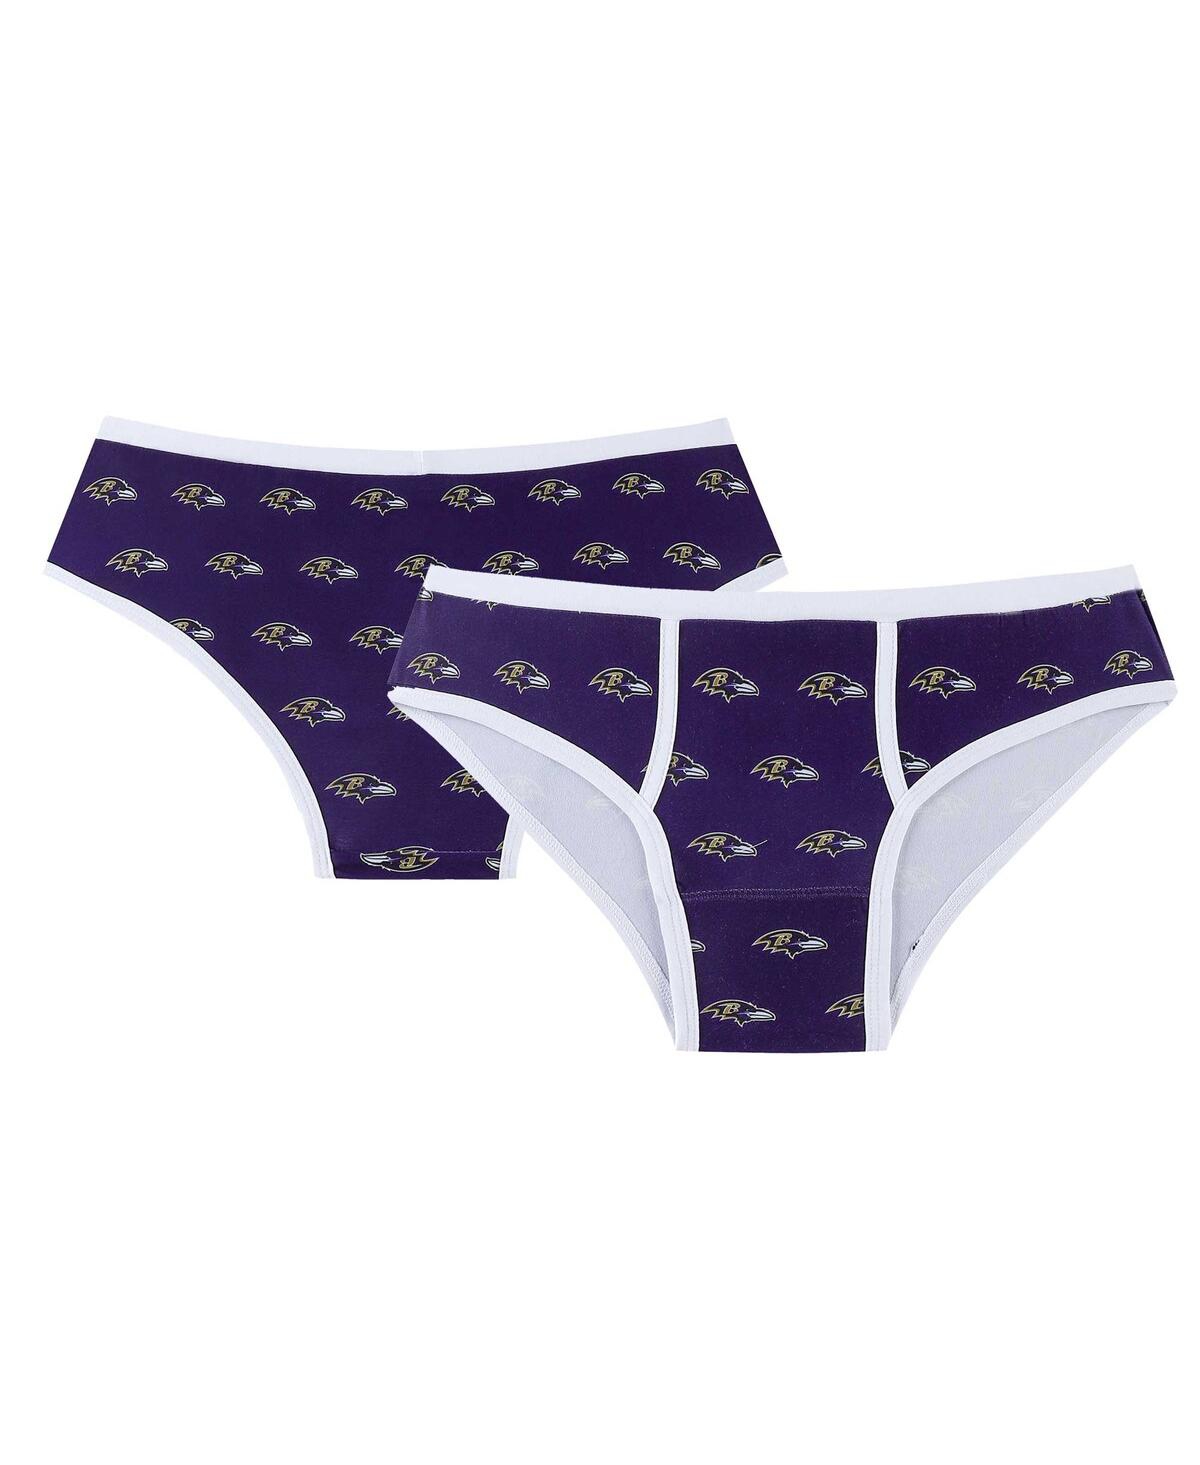 Women's Concepts Sport Purple Baltimore Ravens Gauge Allover Print Knit Panties - Purple